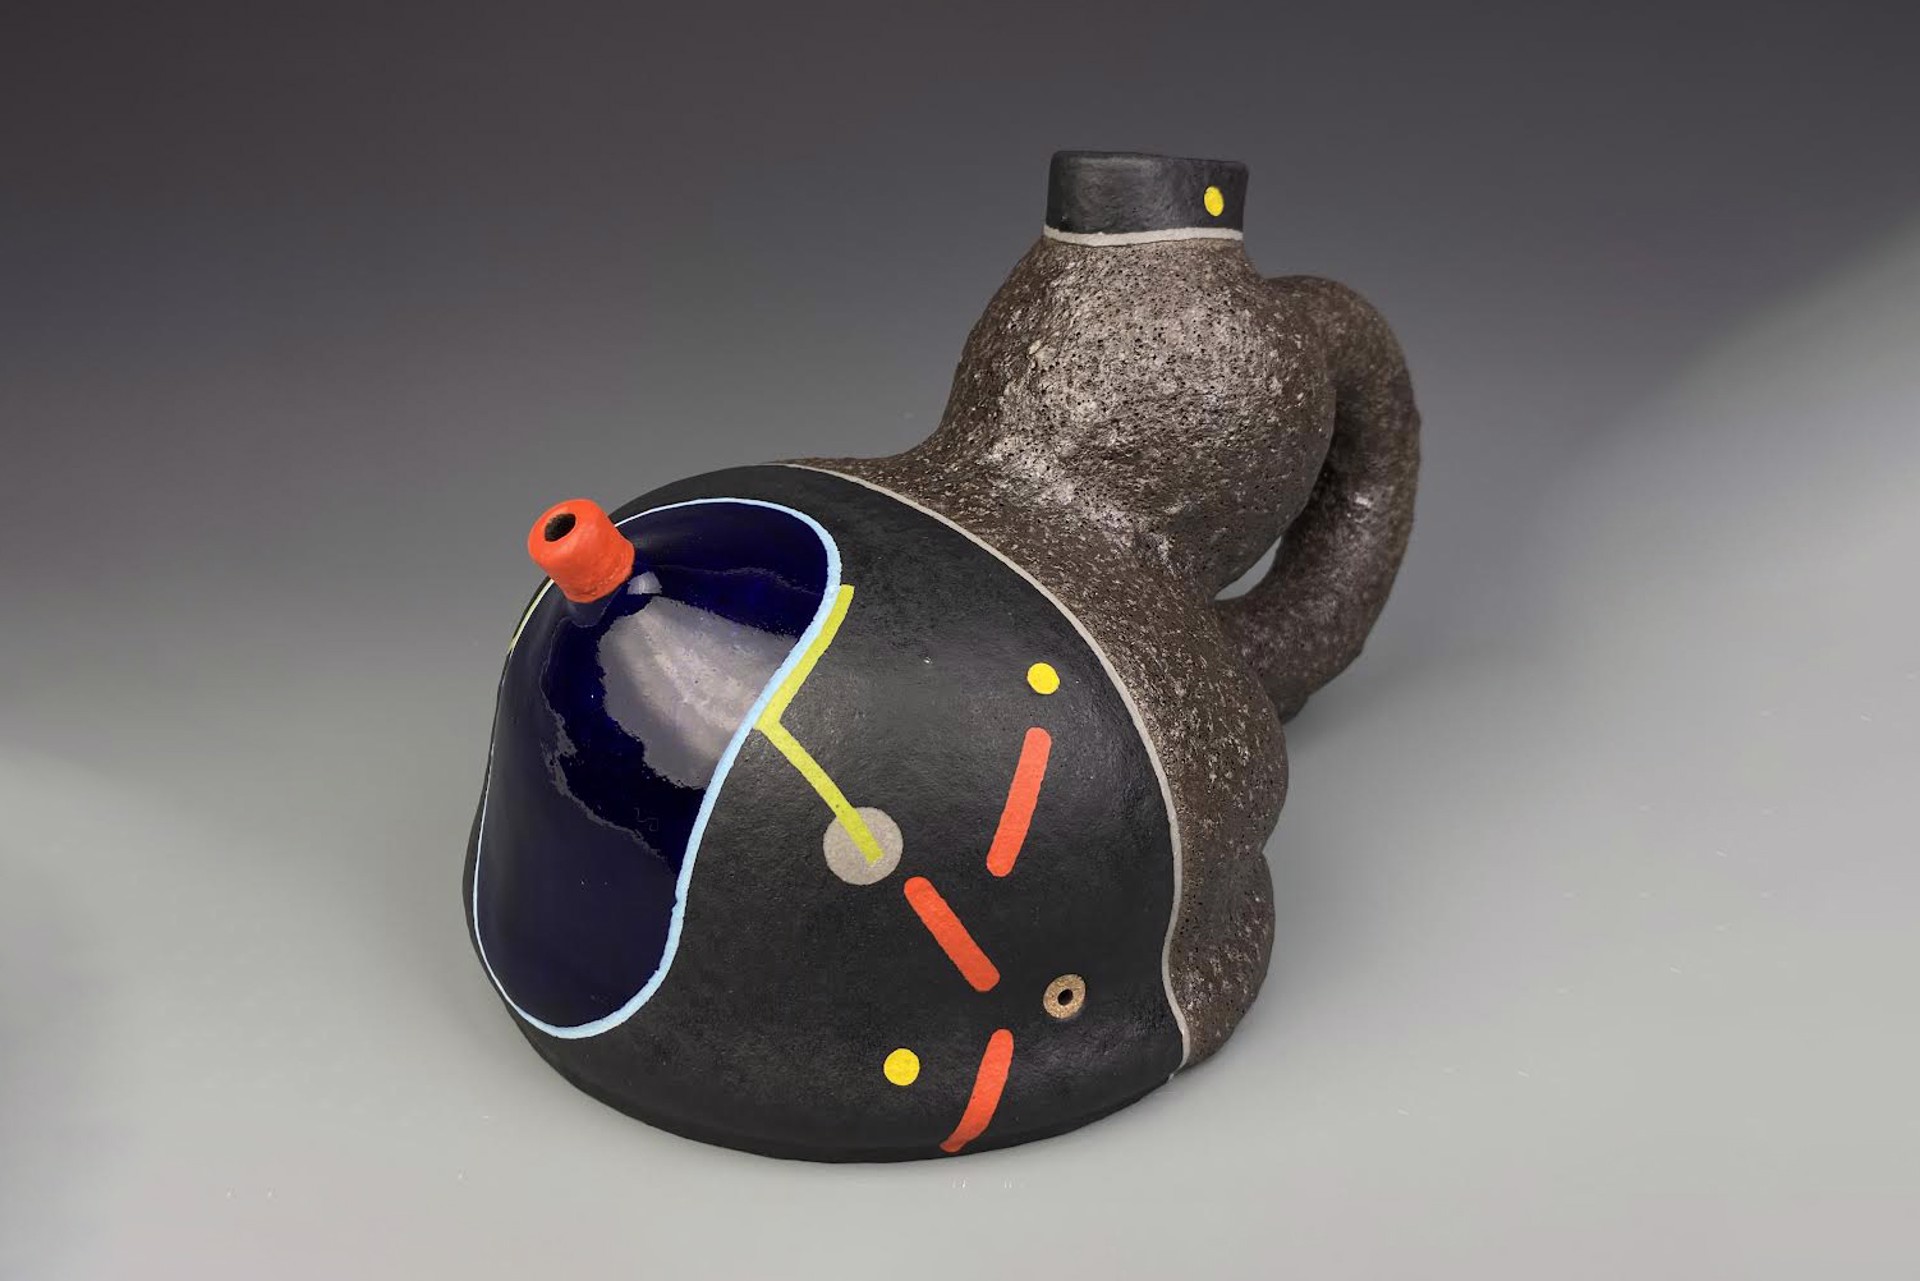 Teapot by Jose Sierra